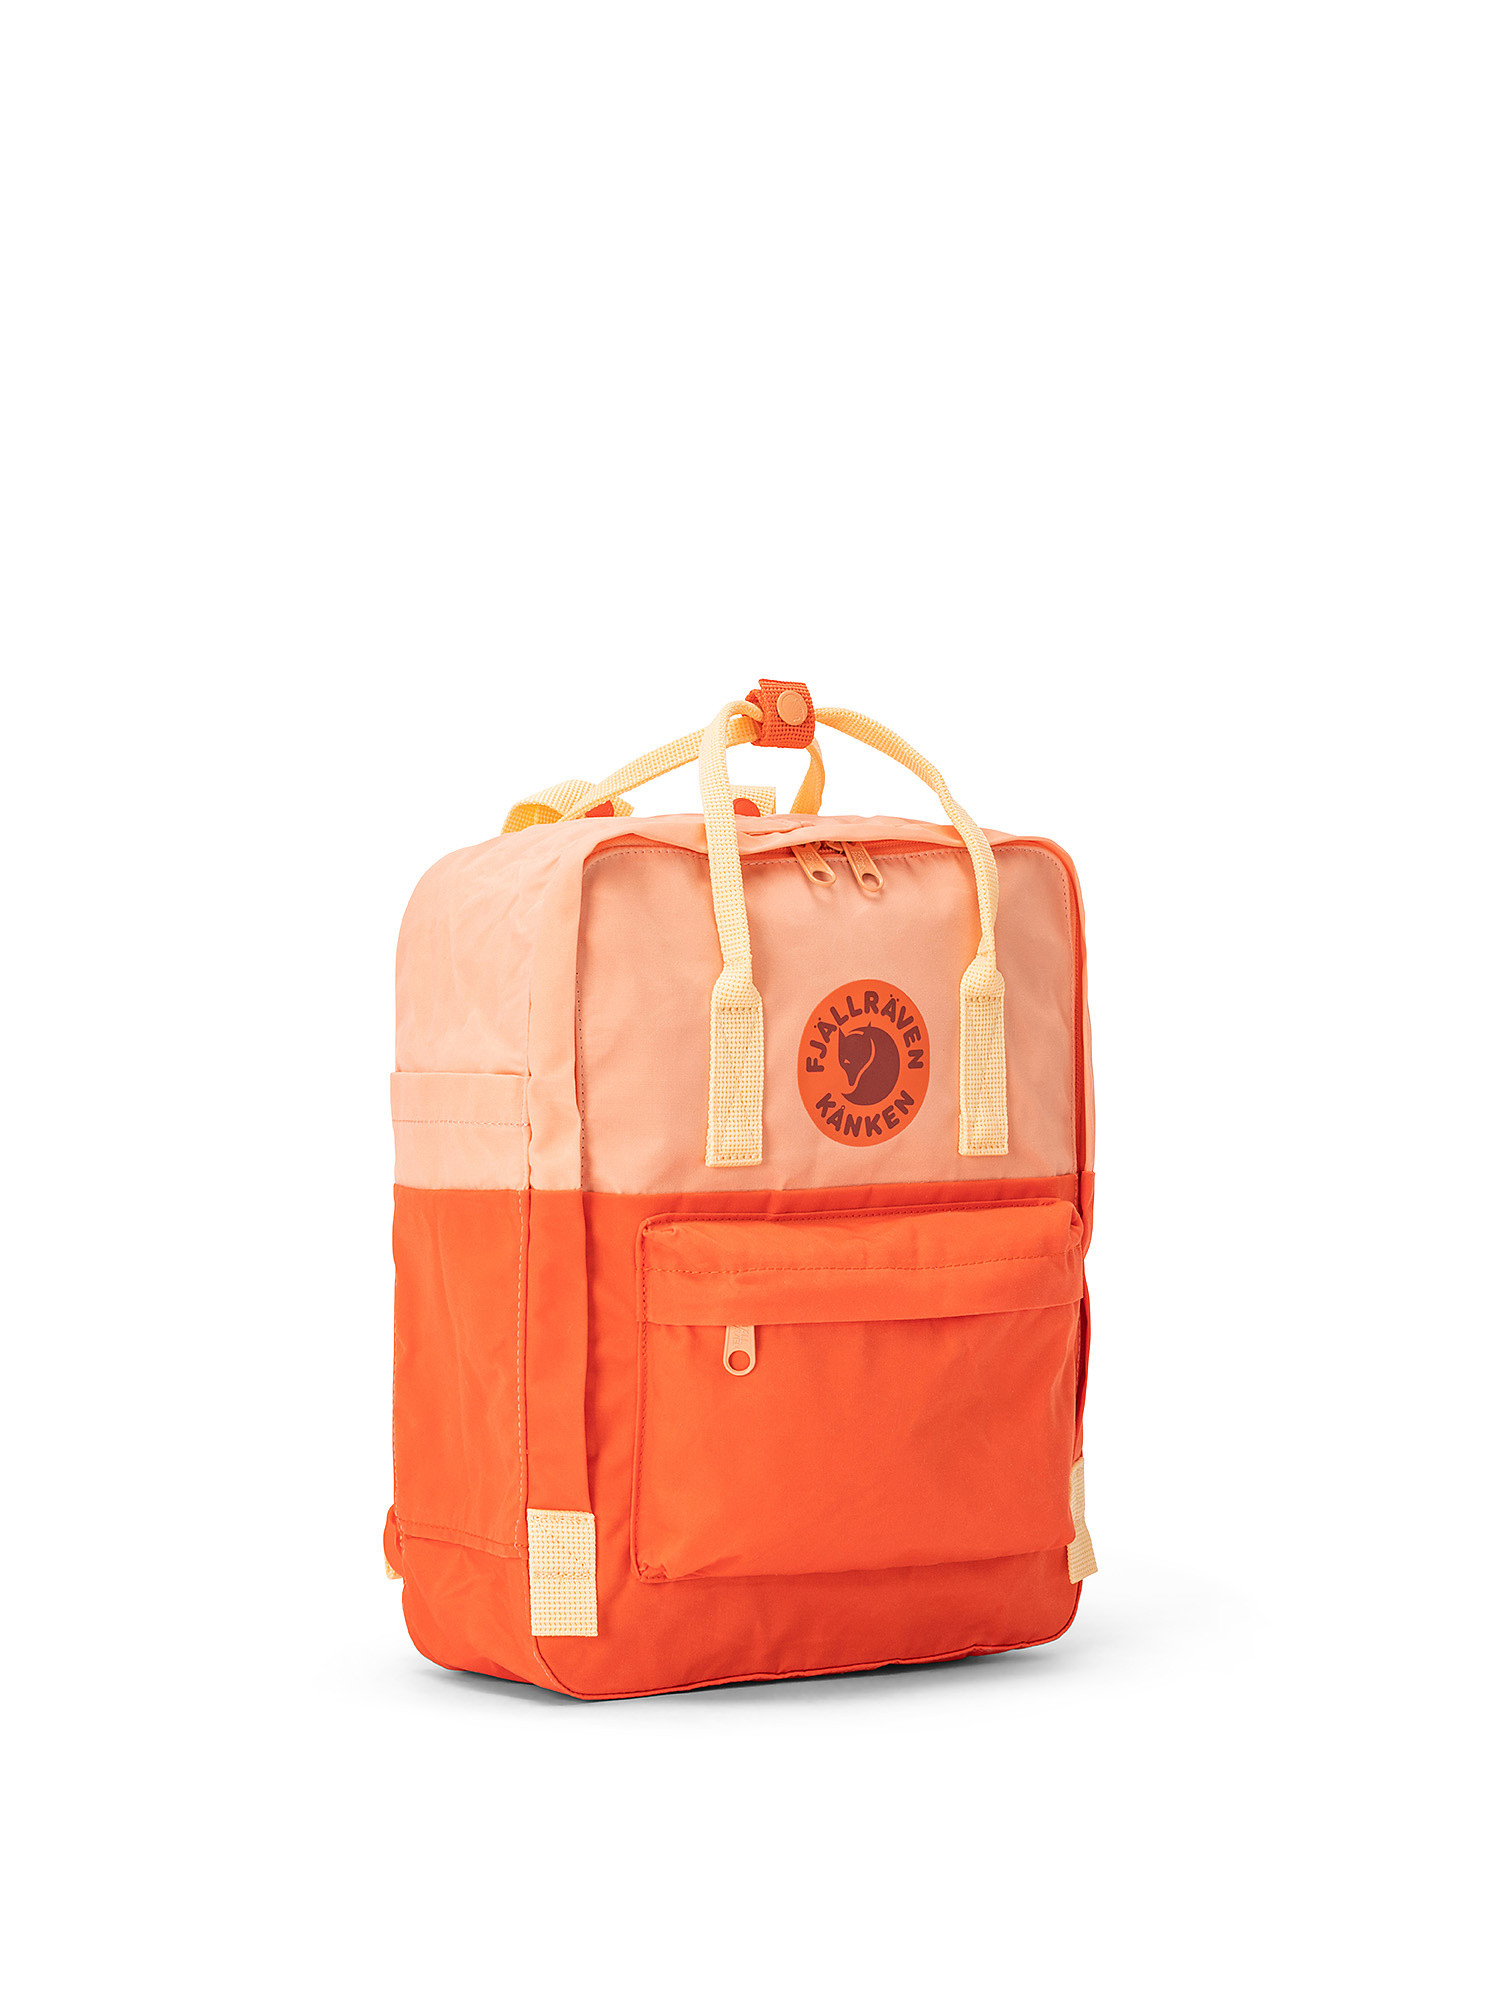 Backpack with adjustable shoulder straps, Red, large image number 1